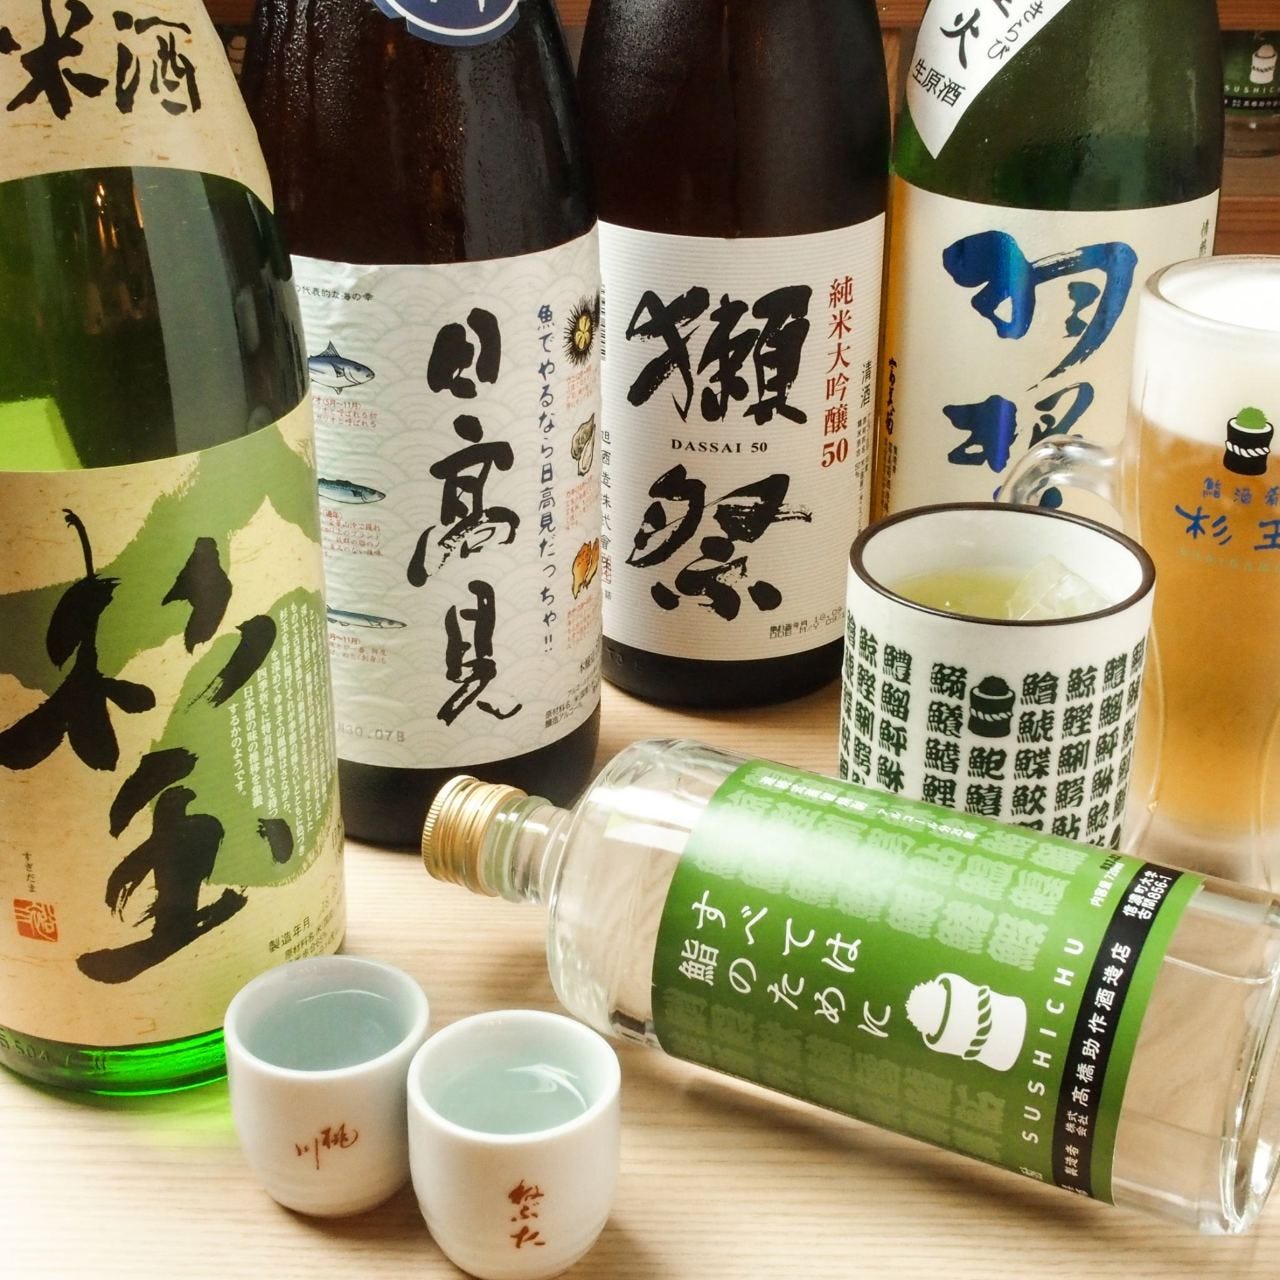 鮨・酒・肴 杉玉 高円寺